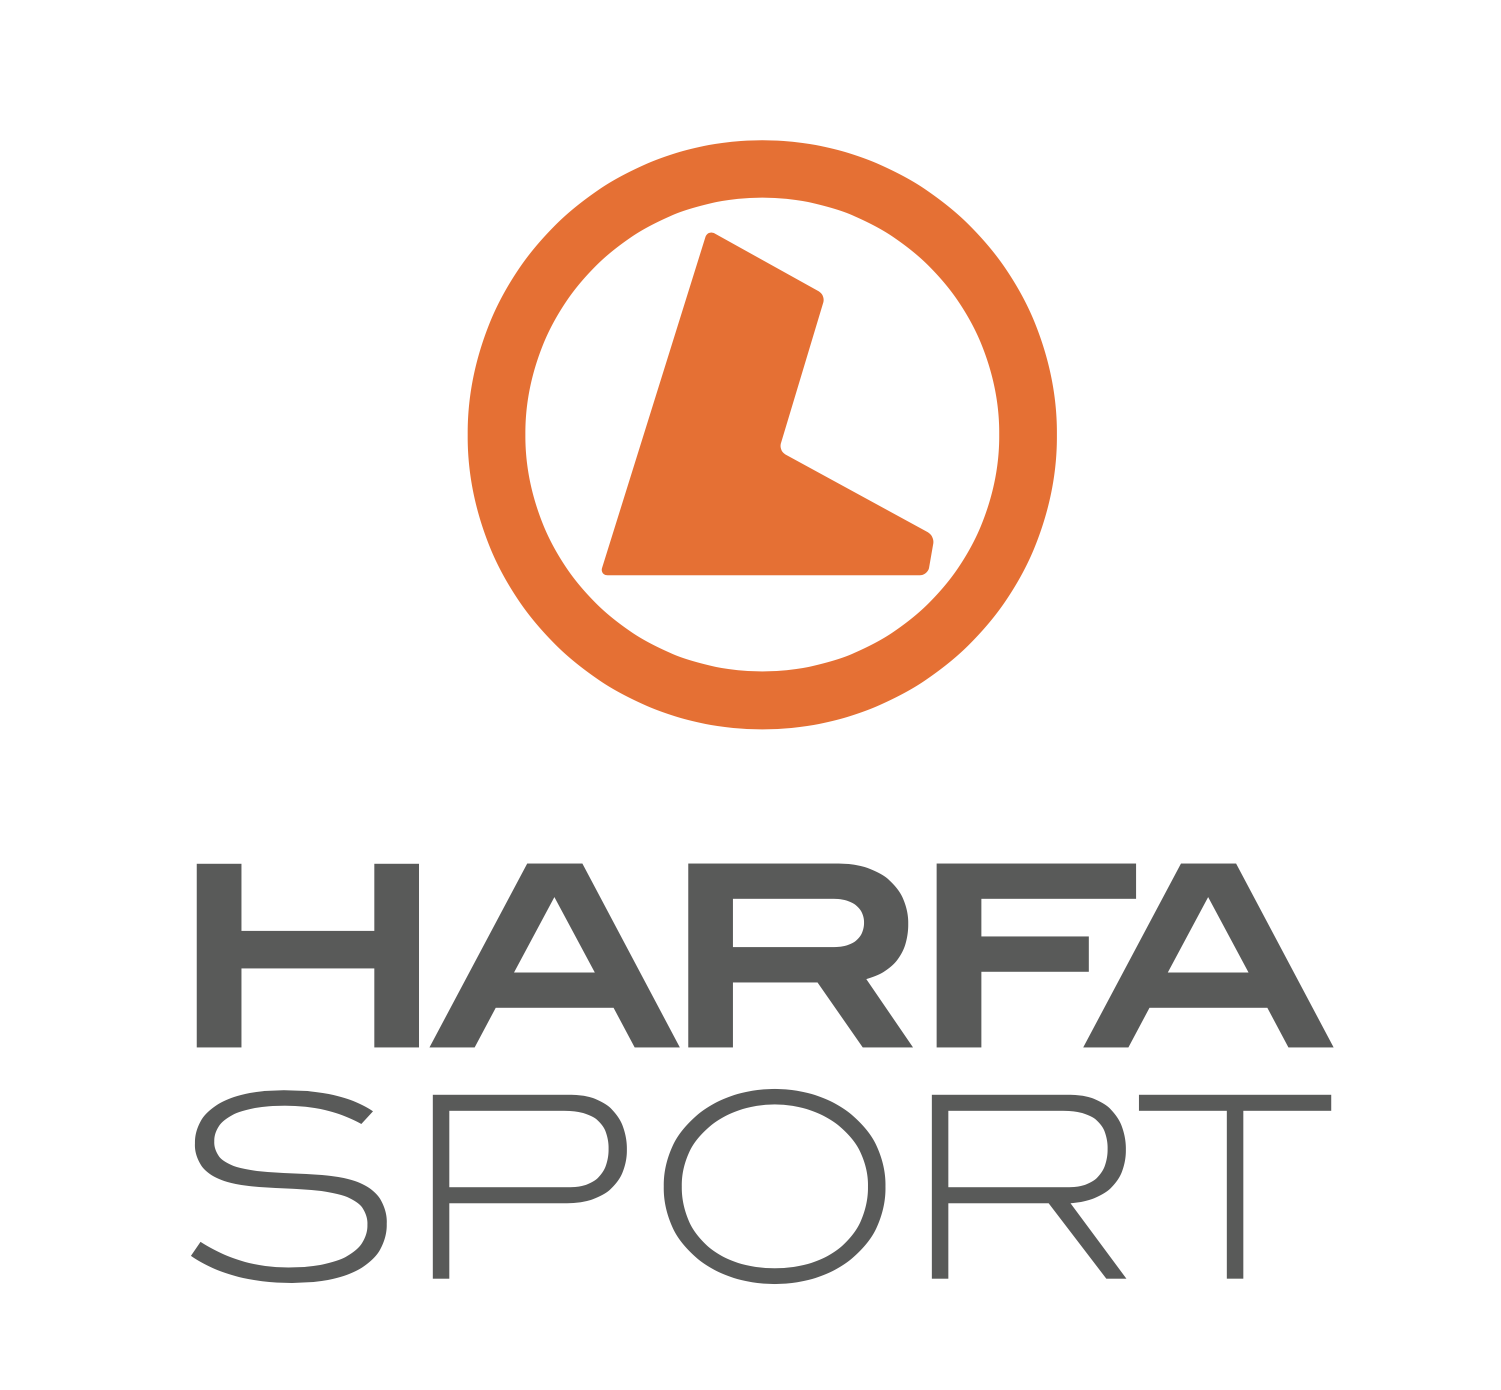 Harfa sport - bootcamp